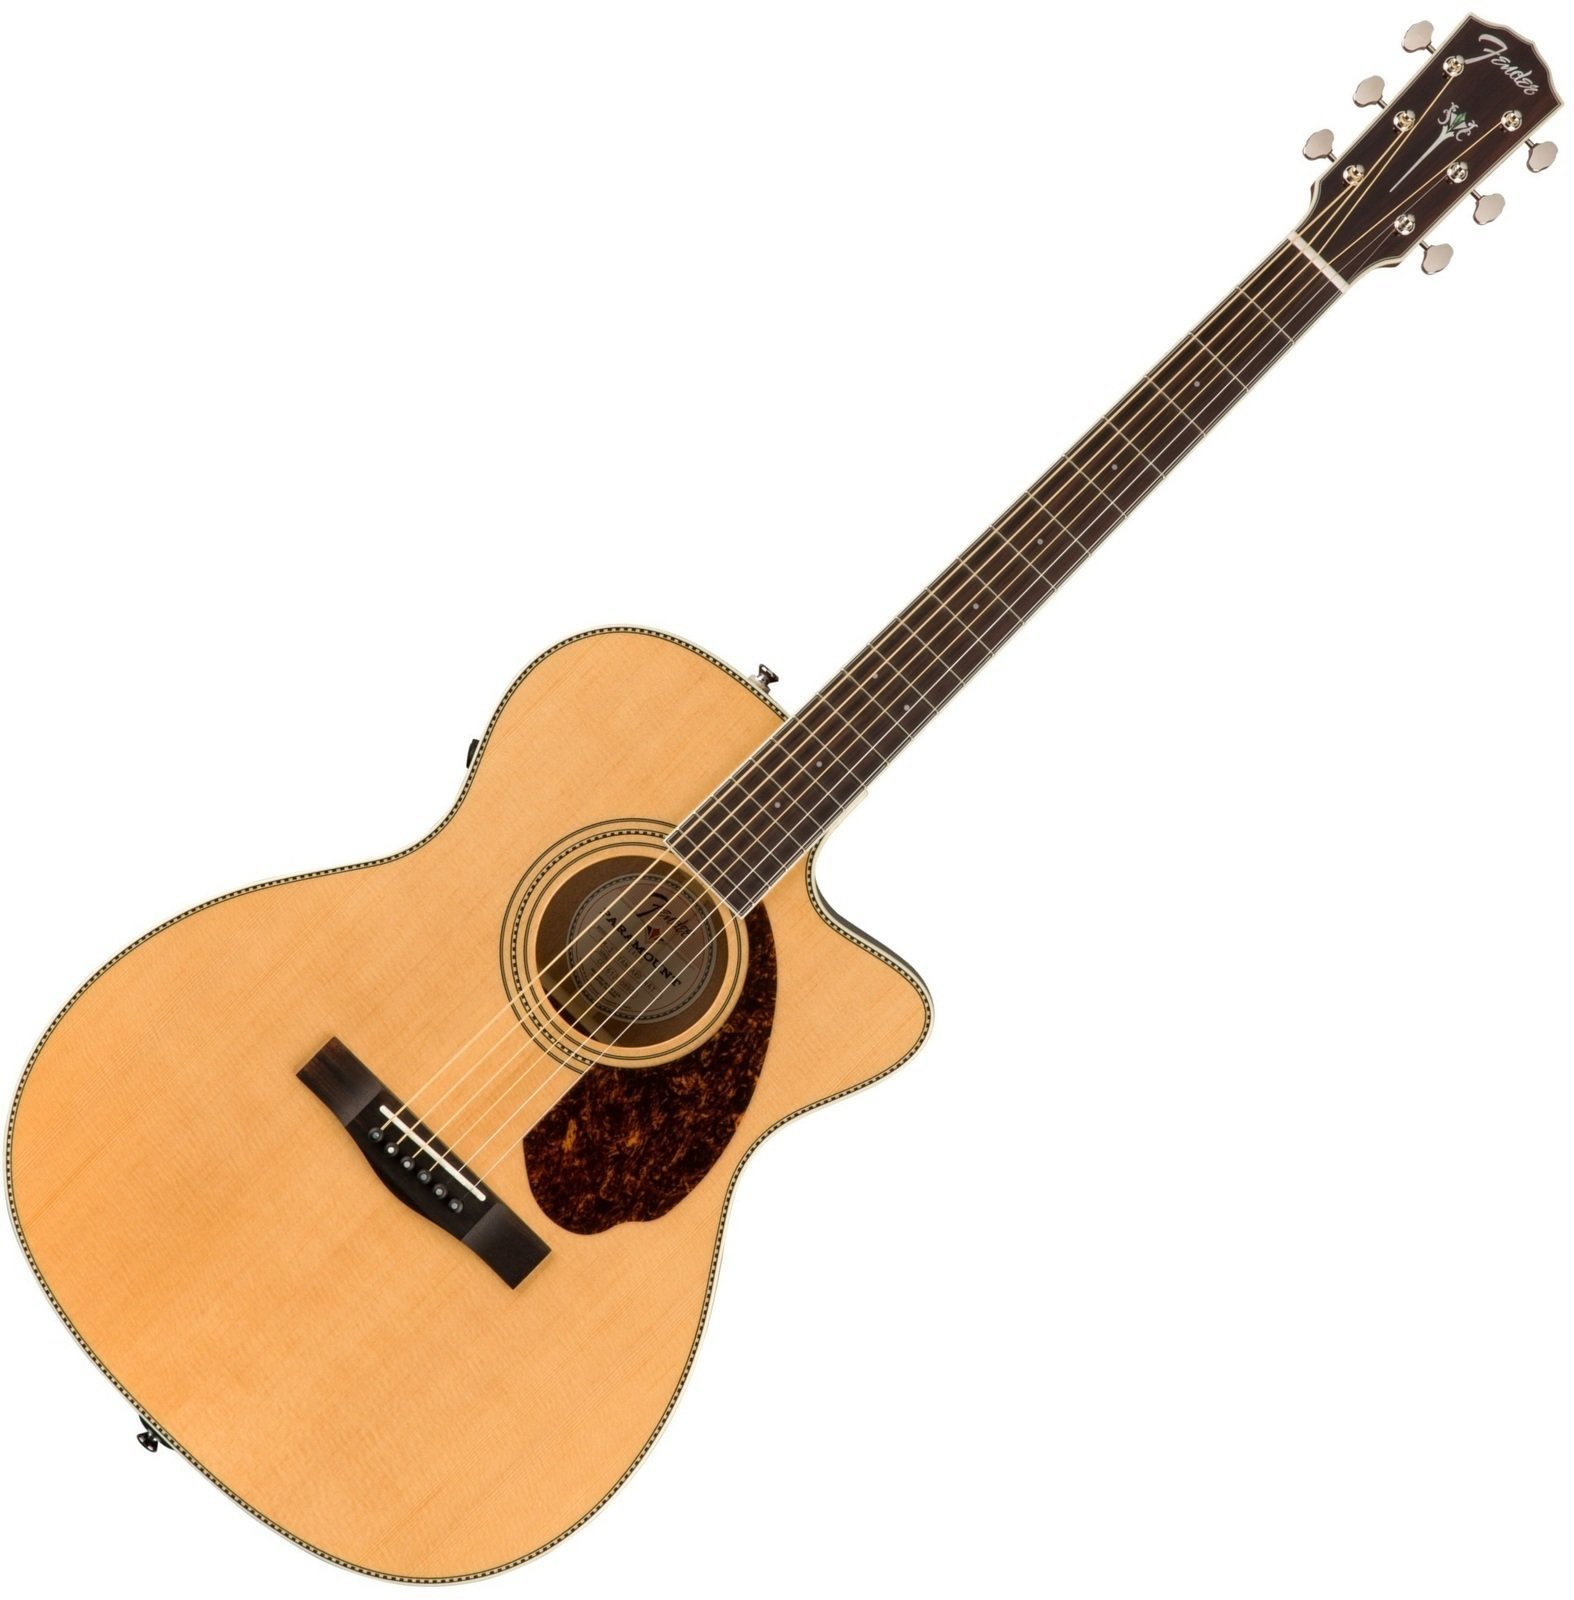 Jumbo elektro-akoestische gitaar Fender PM-3 Natural